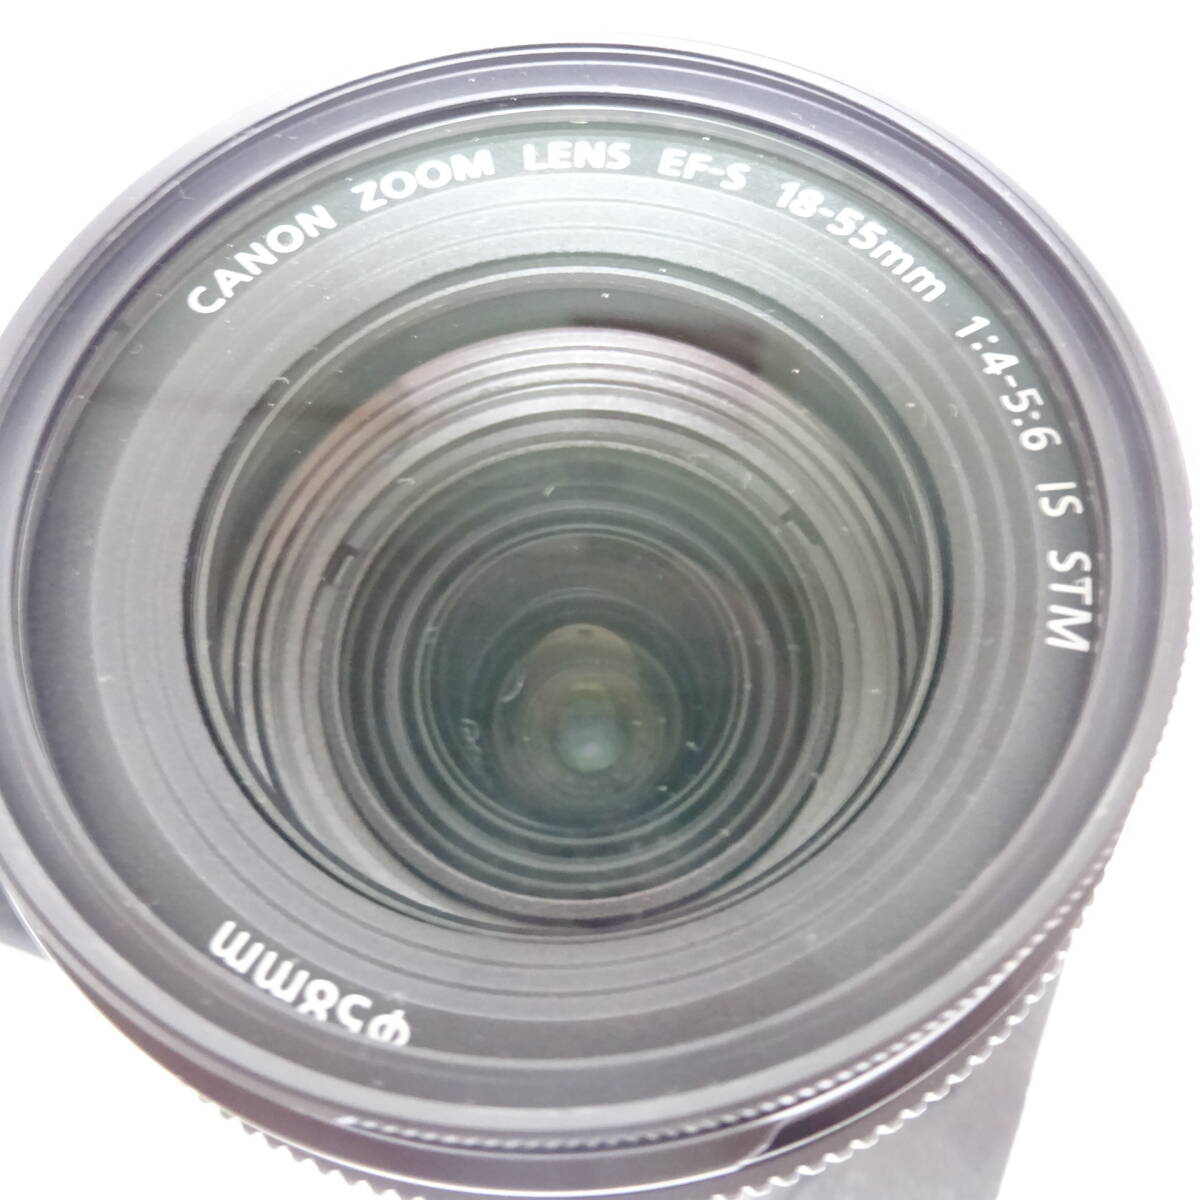 キャノン EOS kiss X10i デジタル一眼カメラ 18-55mm 1:4-5.6 55-250mm 1:4-5.6 レンズ 通電確認済 80サイズ発送 KK-2643445-058-mrrzの画像3